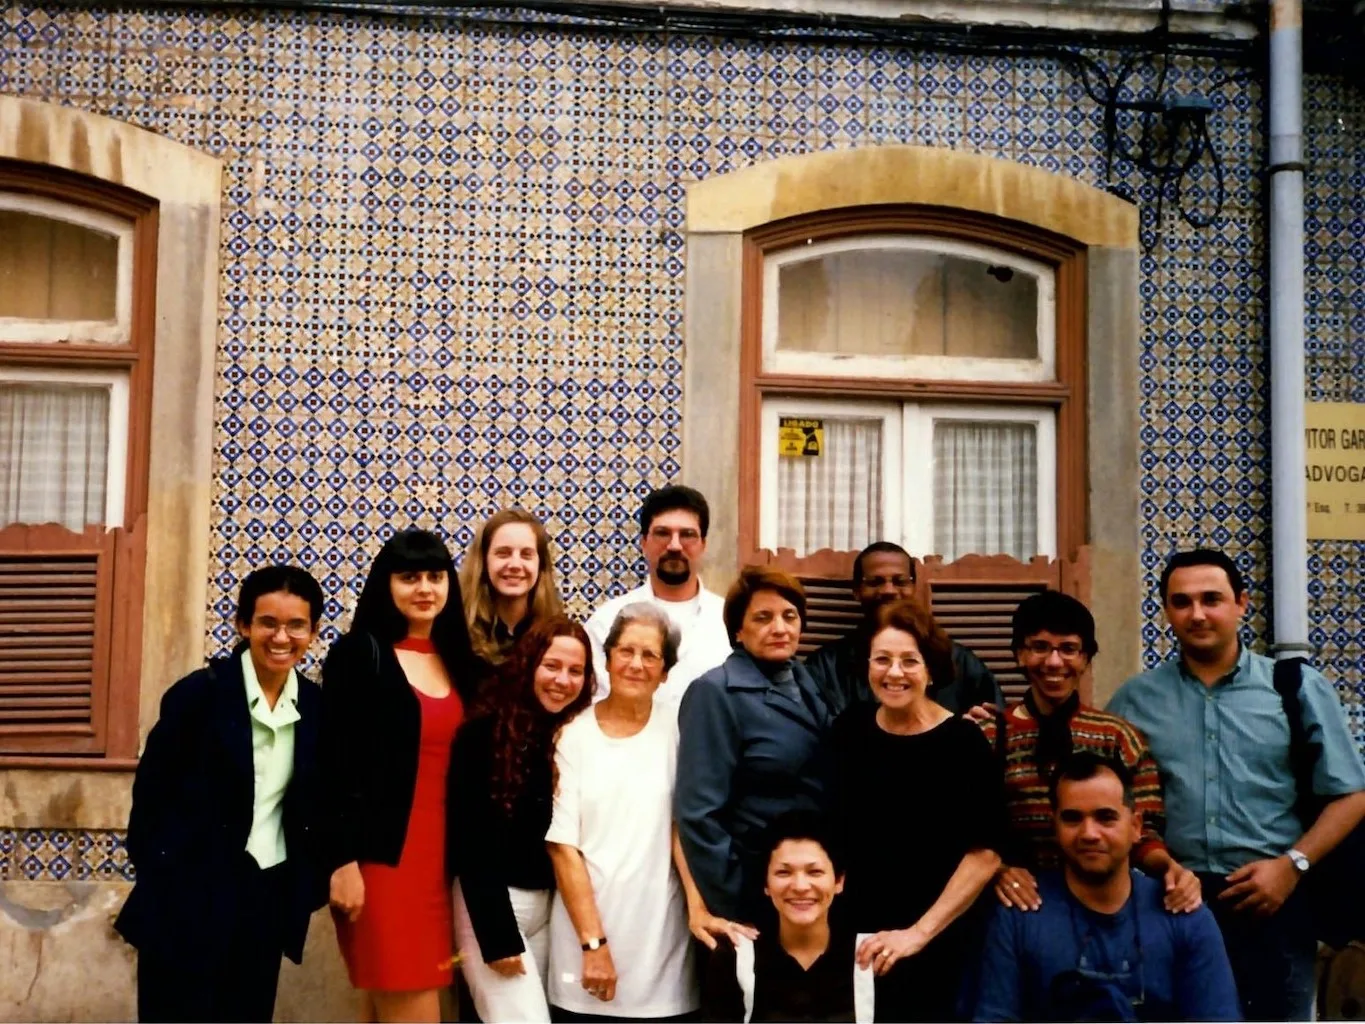 Grupo de 13 adultos reunidos em torno de uma senhora de cabelos escuros e óculos, do lado externo de uma casa com revestimento de ladrilhos portugueses e 2 janelas